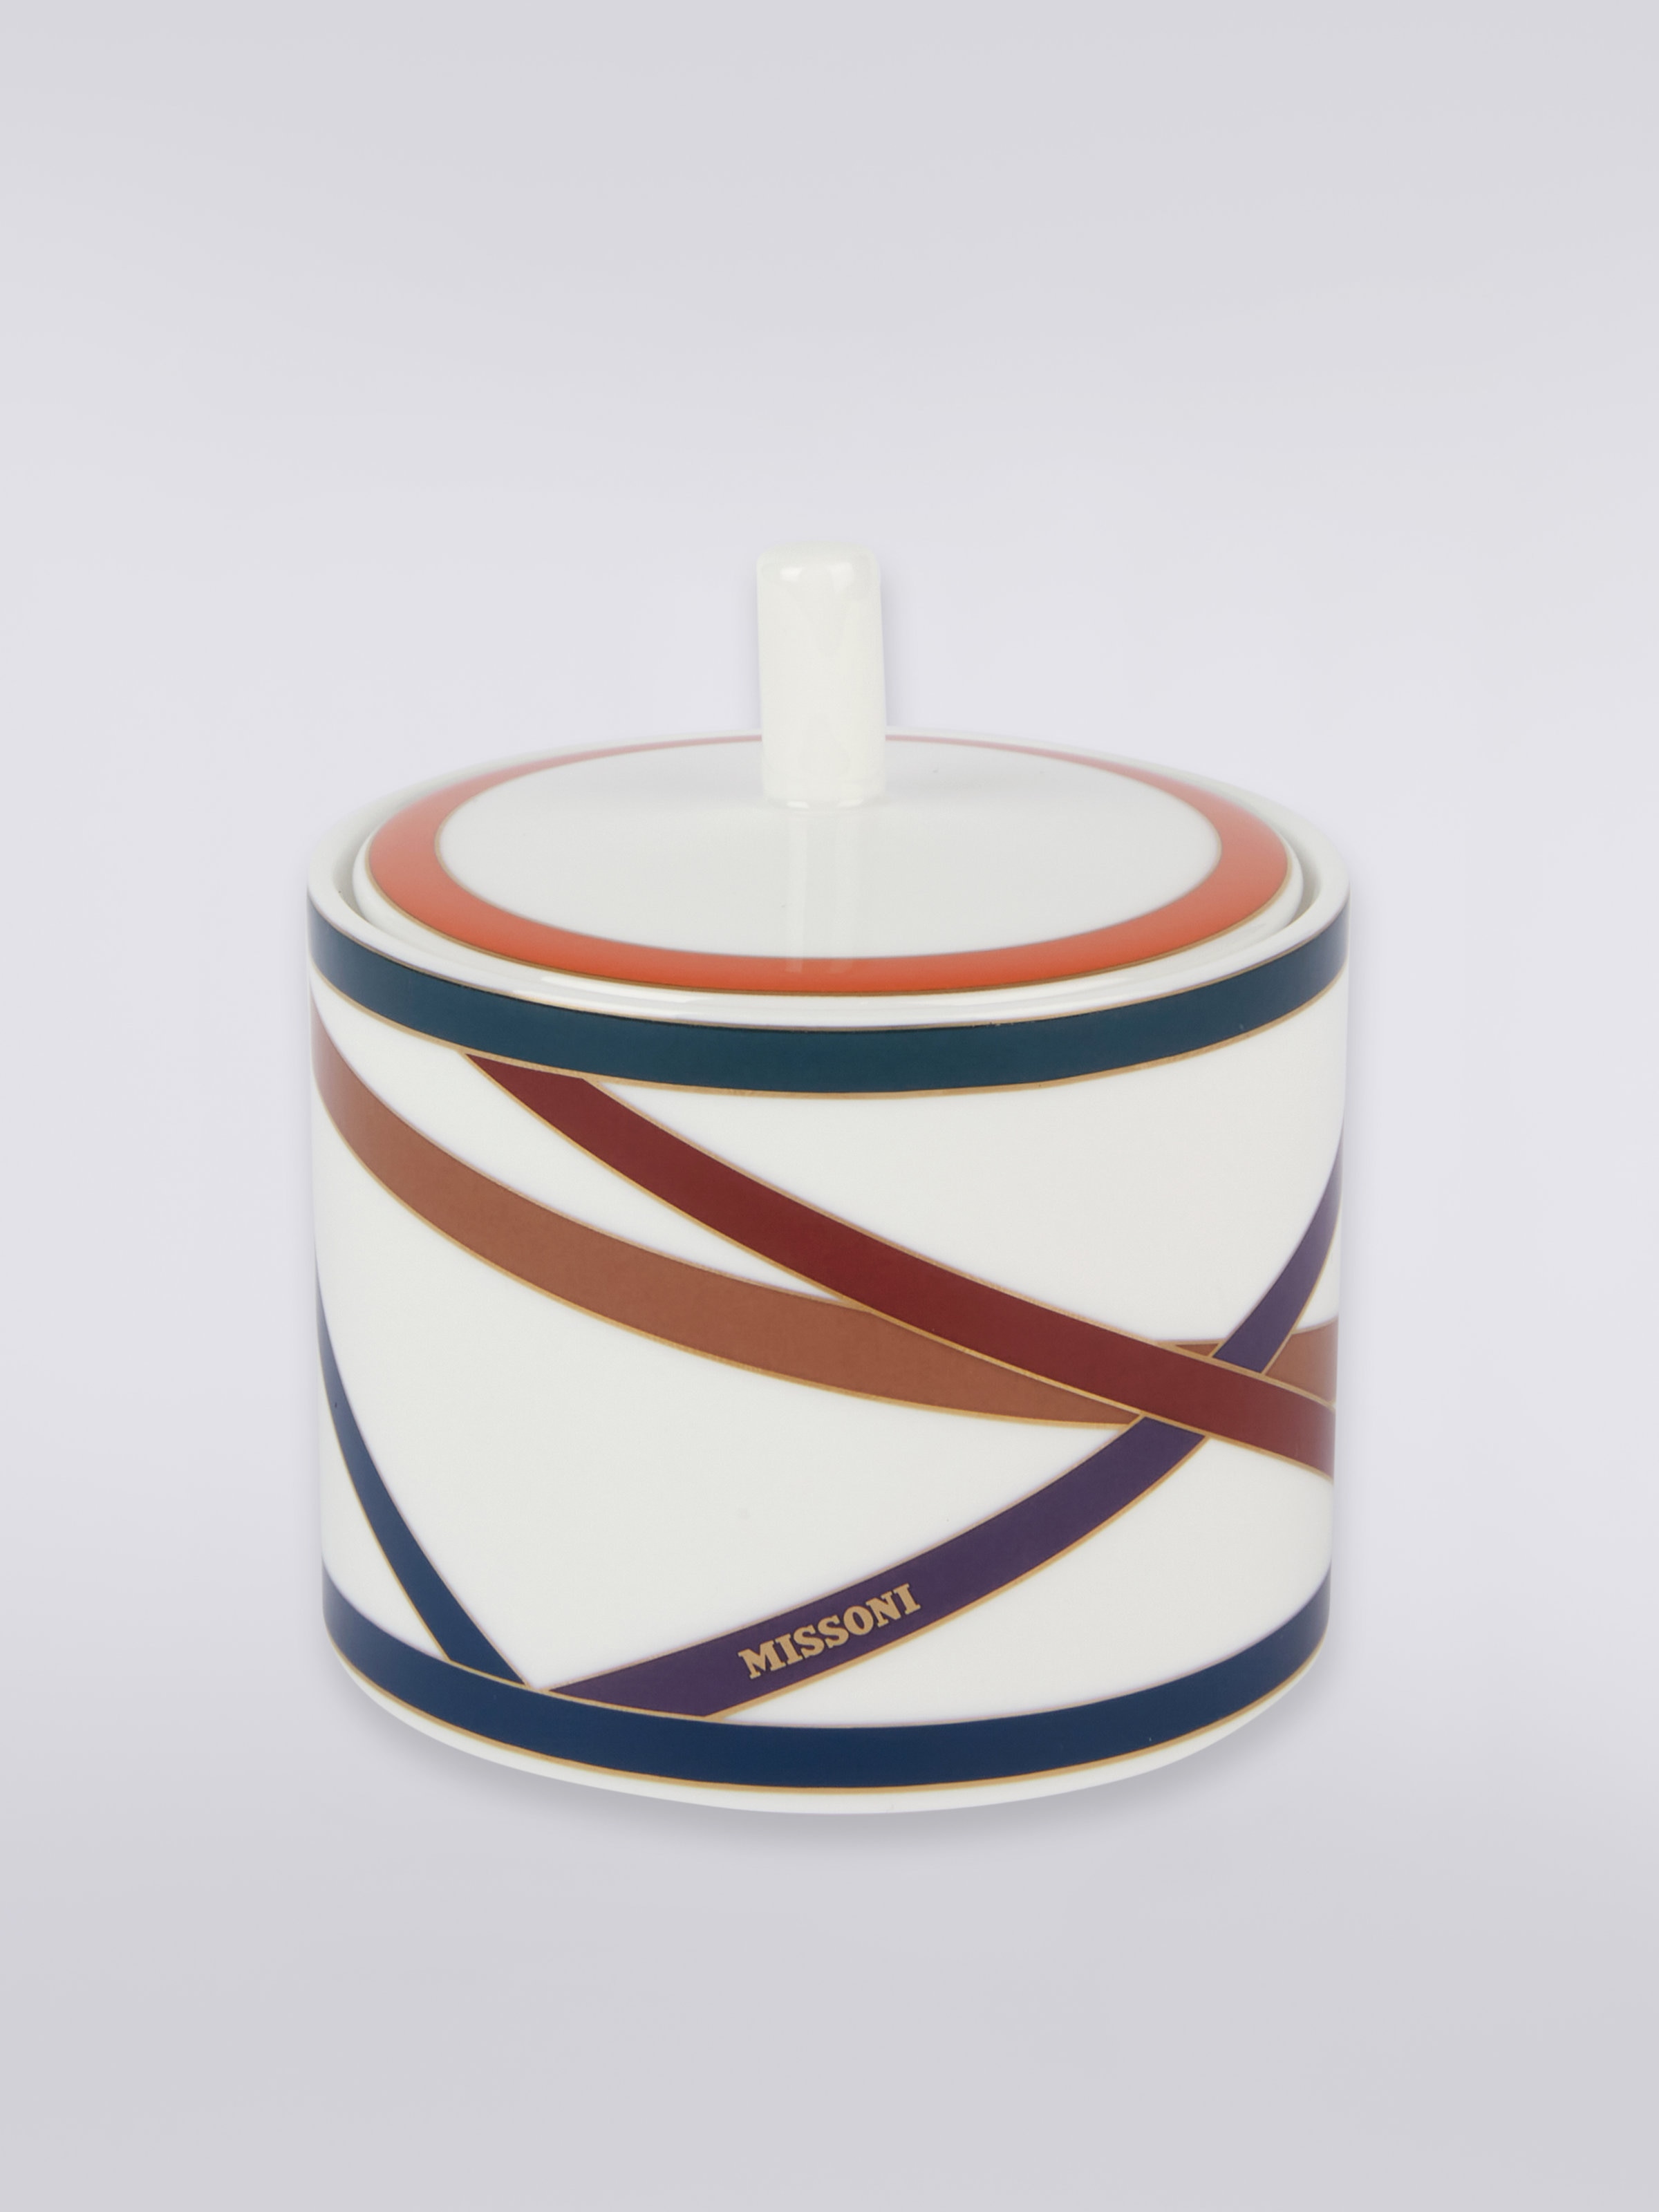 Nastri Sugar Bowl, Multicoloured  - 0